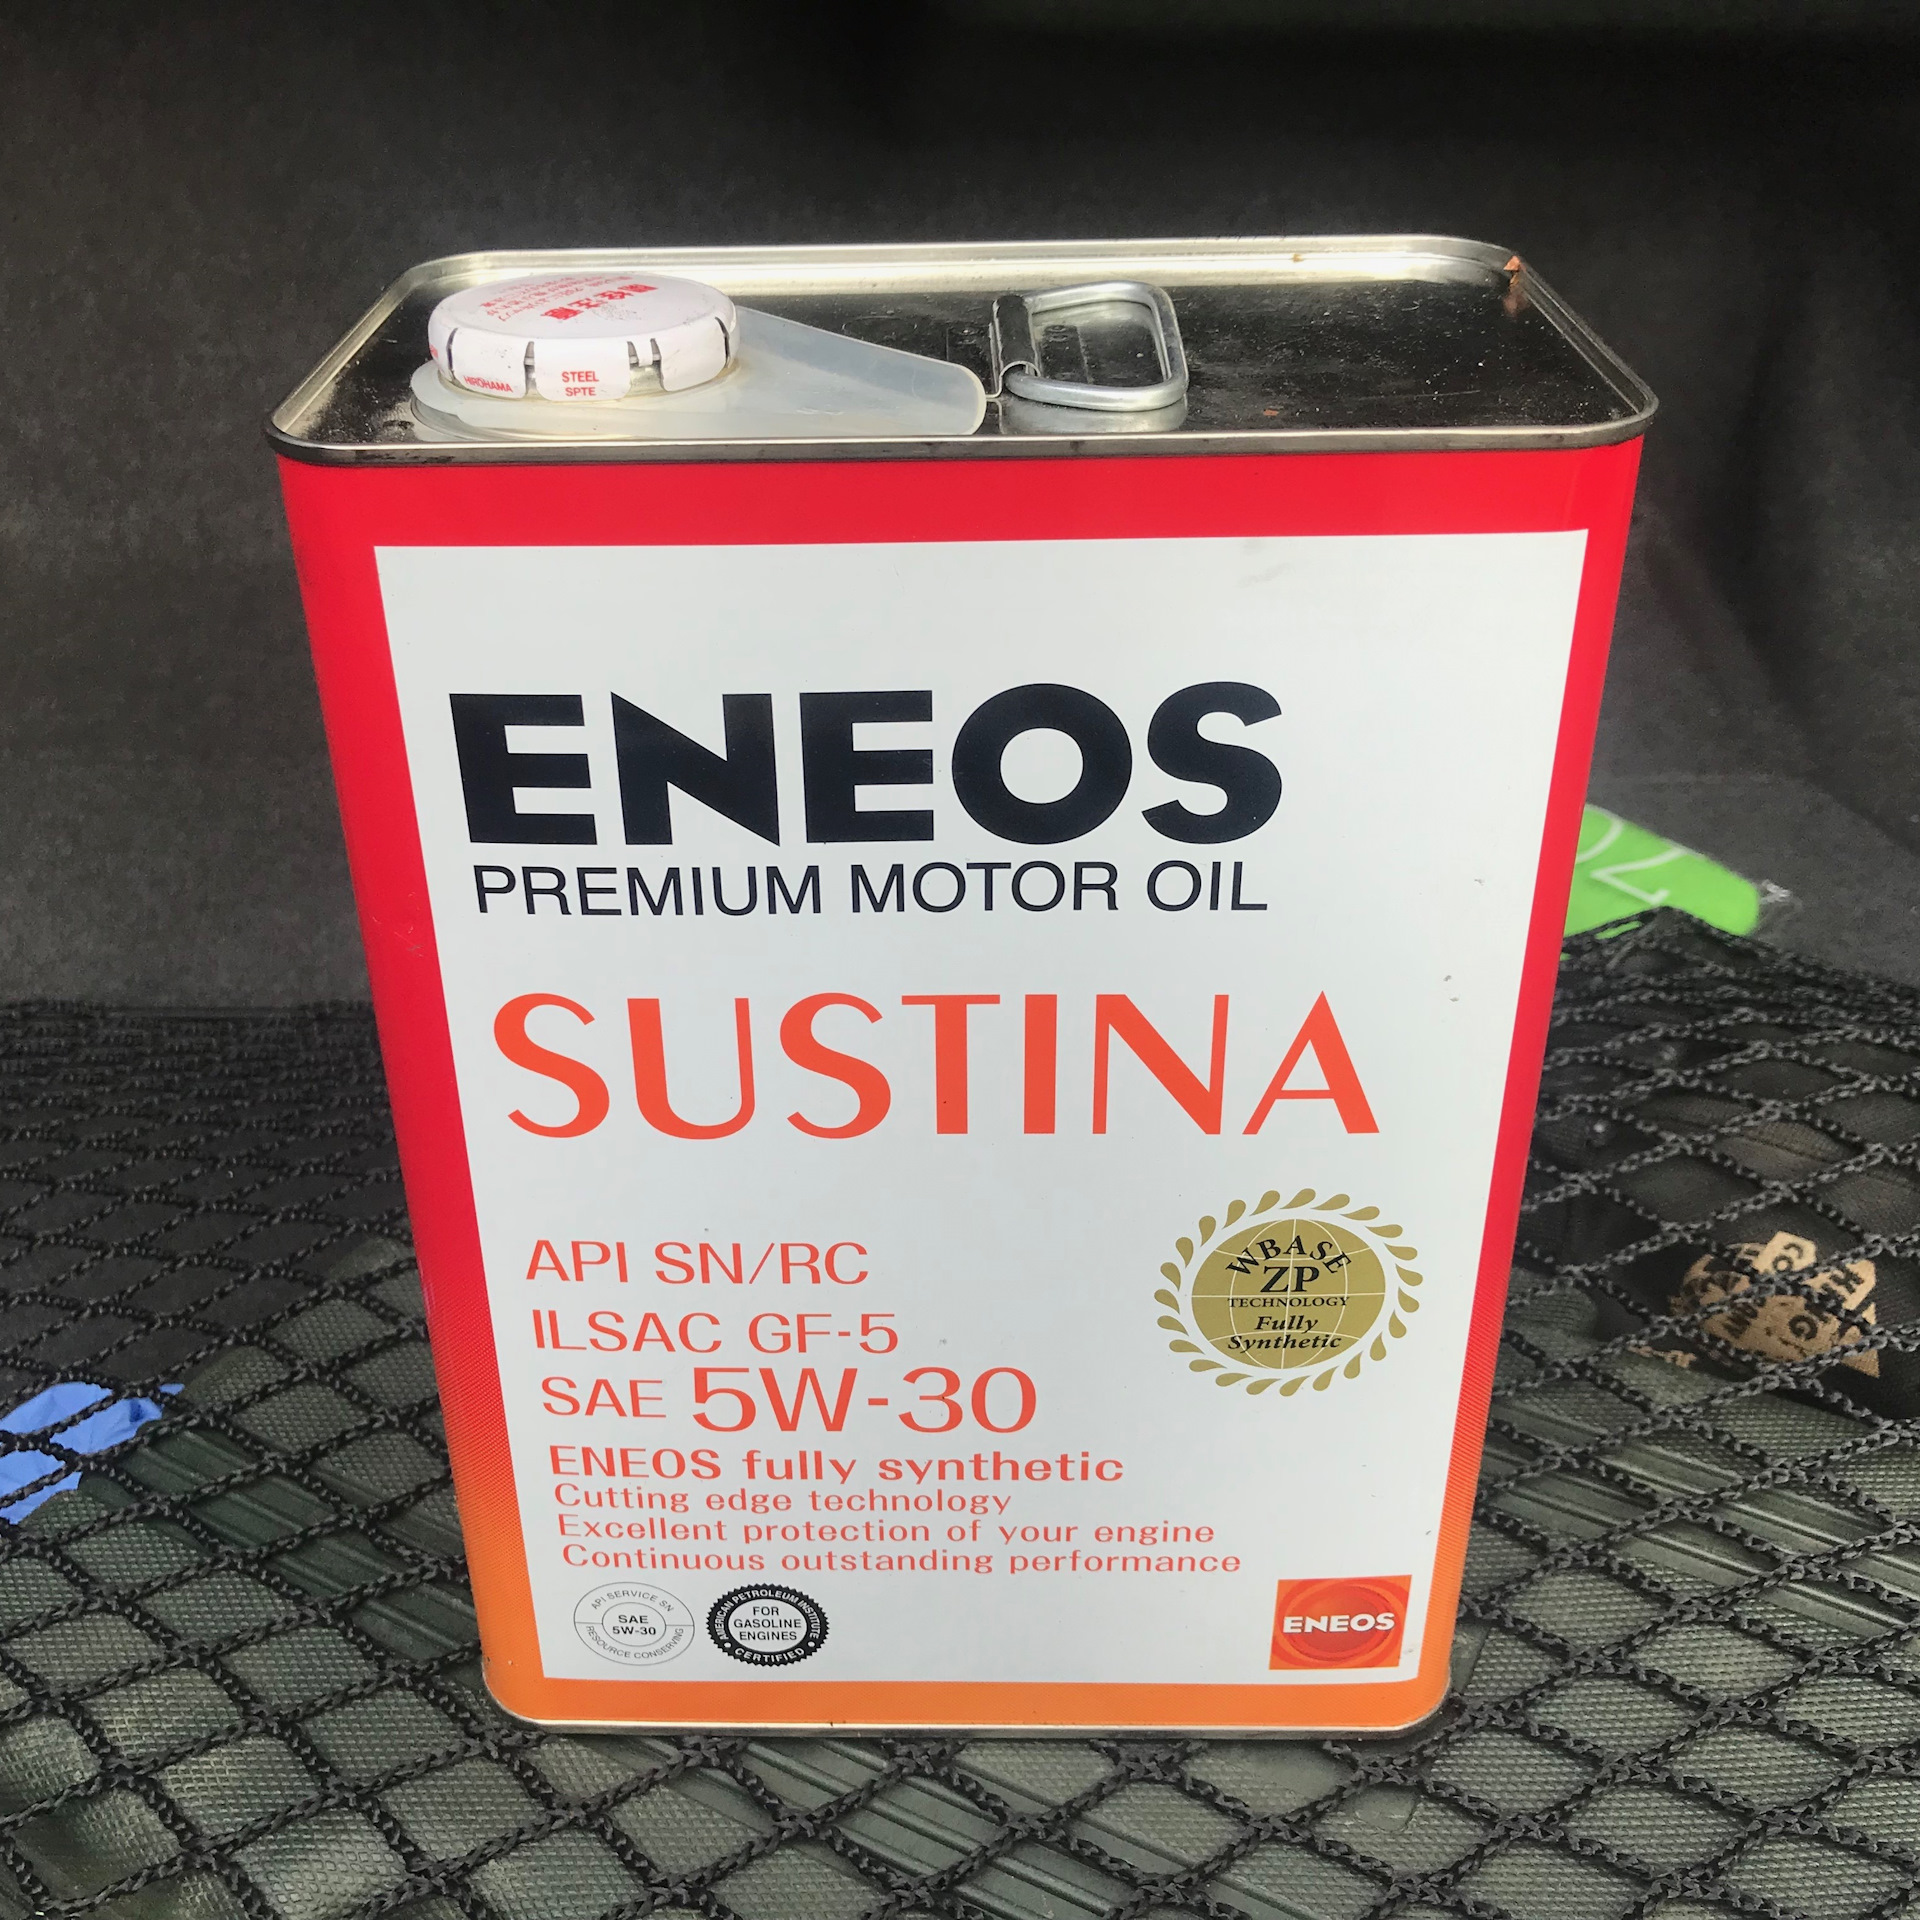 Японское масло отзывы. Энеос Сустина 5w30. ENEOS 5w30 a1 b1. Японское масло ENEOS 5w-30. Японские масла 5w30 для Тойоты.